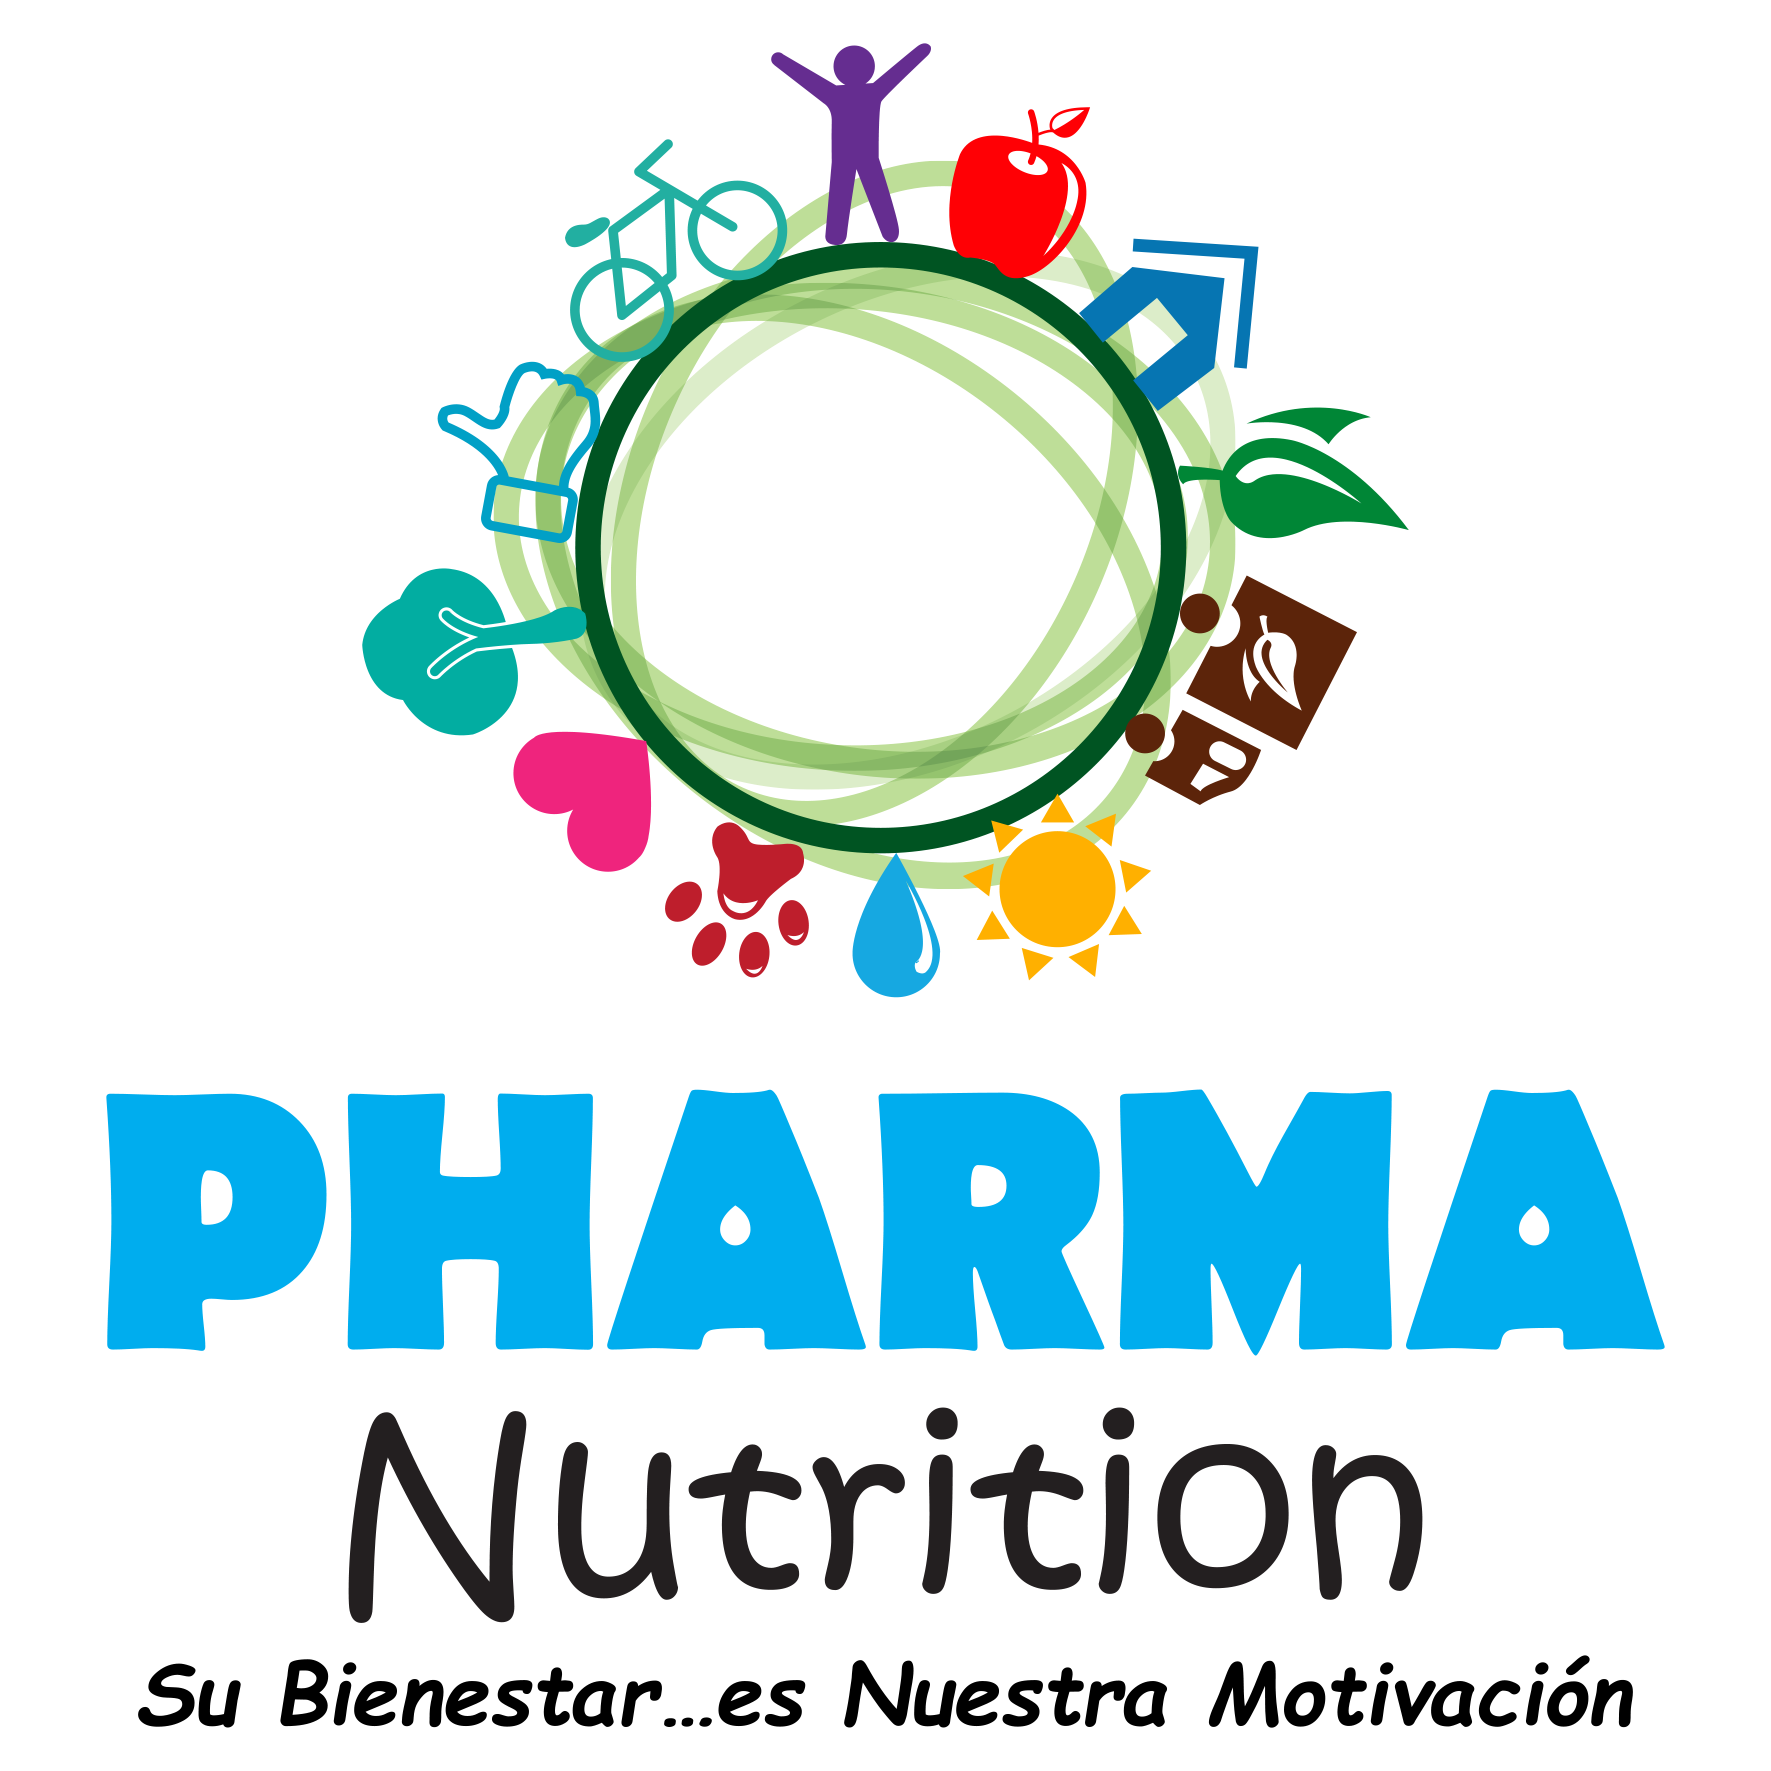 Pharma Nutrition